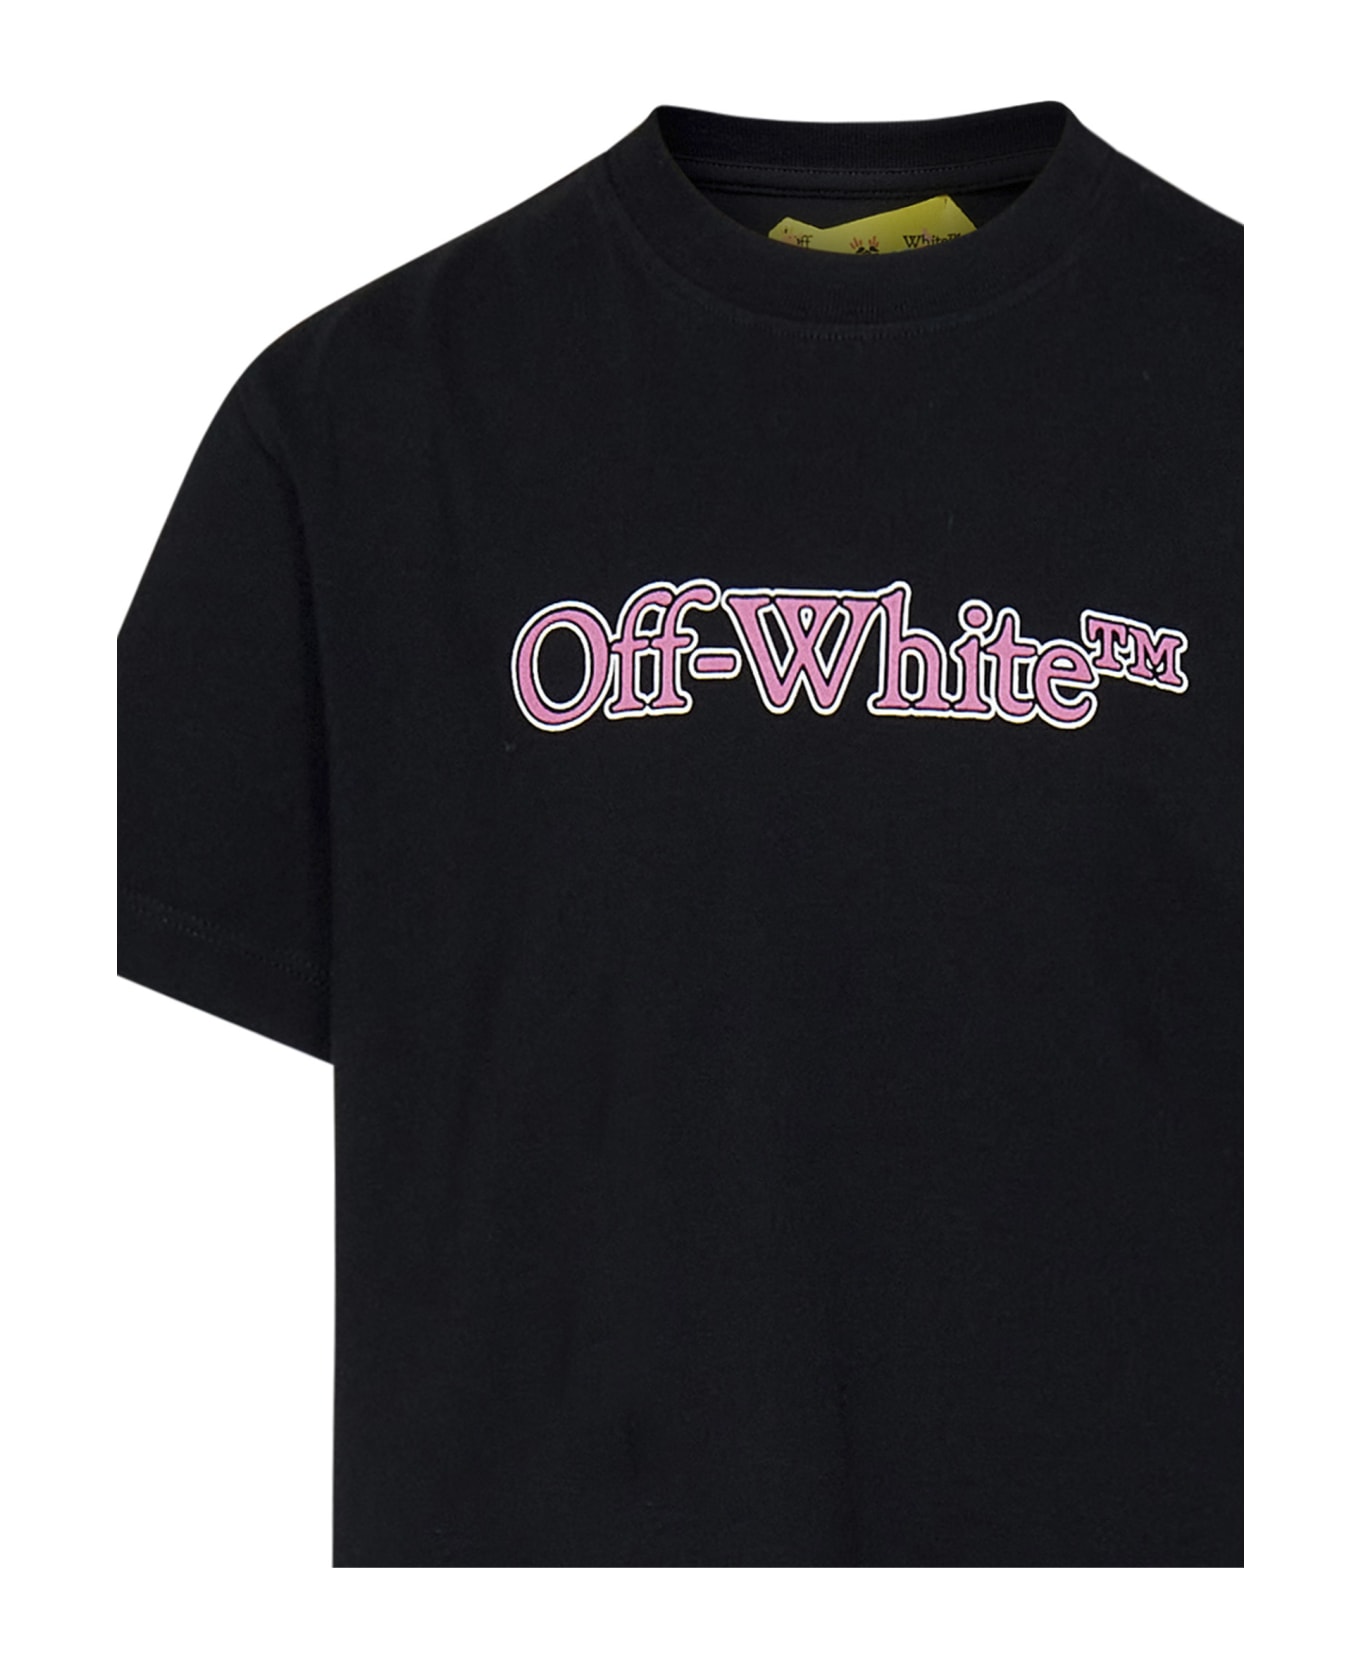 Off-White Kids T-shirt - Black